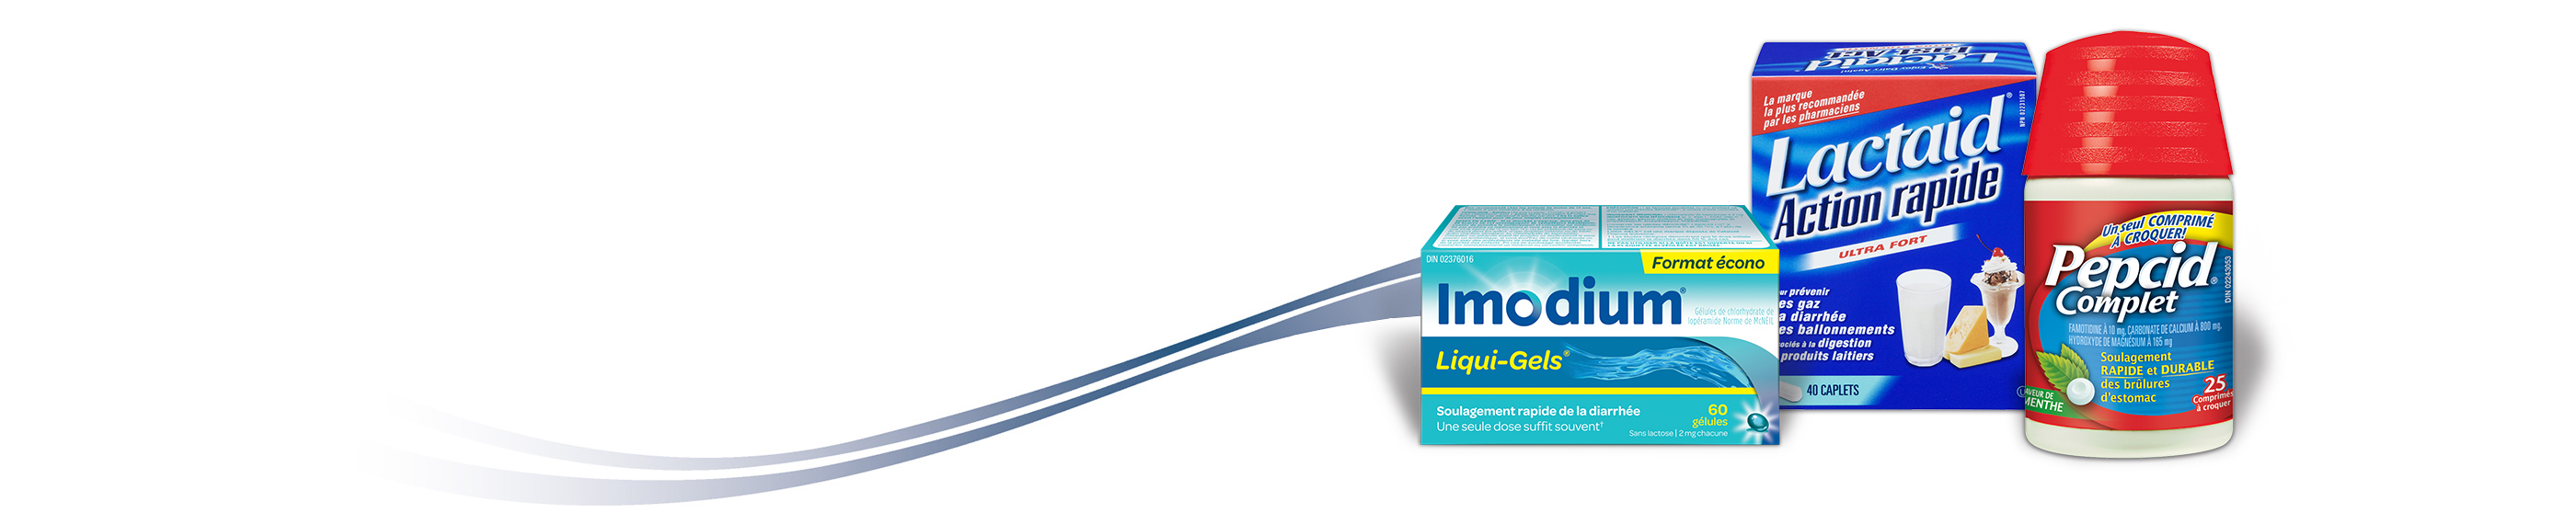 Imodium Liqui-Gels, Lactaid Action rapide et Pepcid Complet